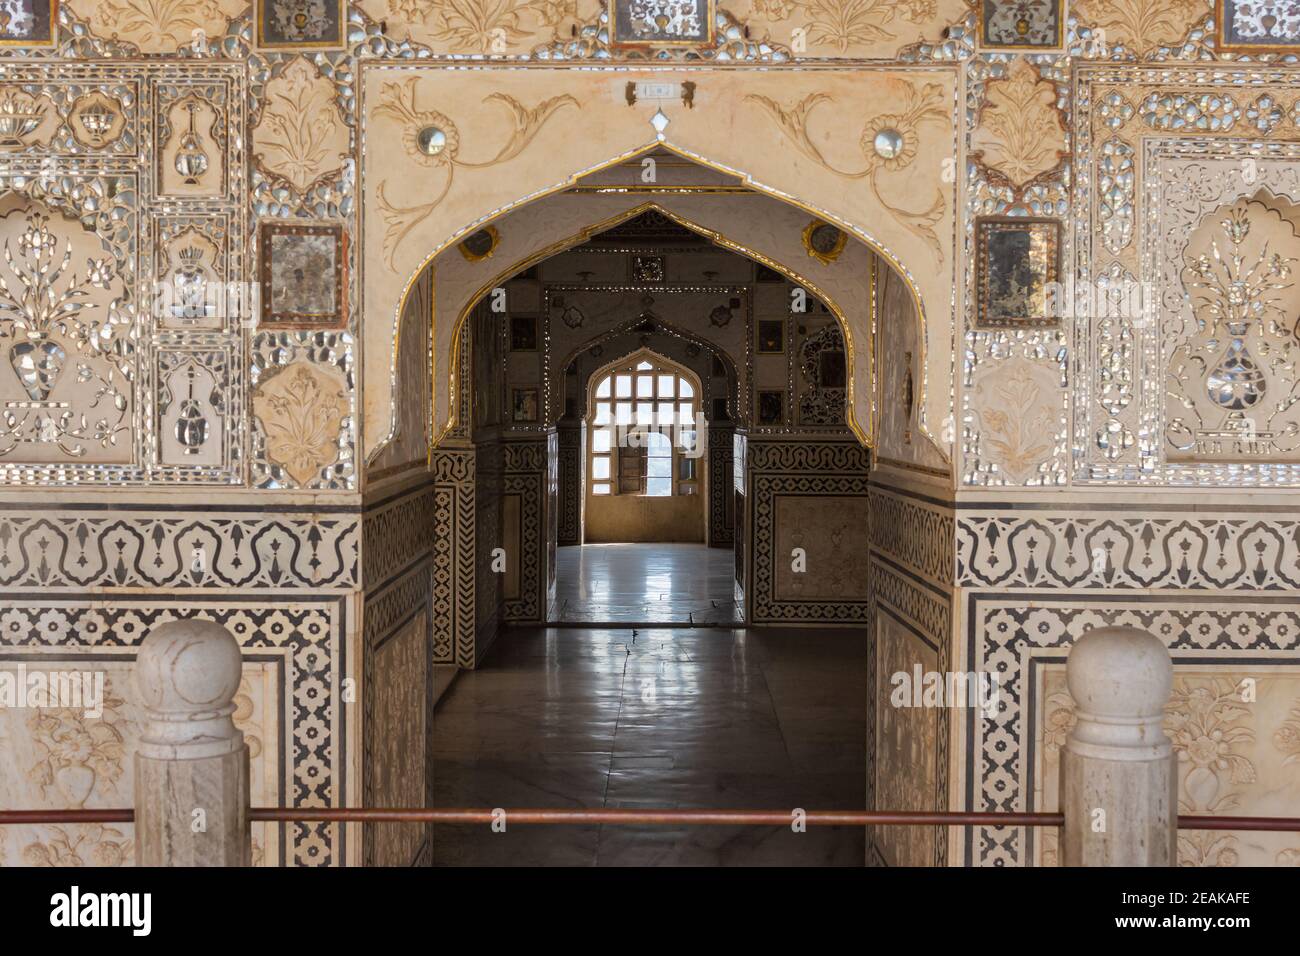 Mosaïques de miroir à Sheesh Mahal, palais de miroir, fort d'Amer, Jaipur, Rajasthan, Inde Banque D'Images